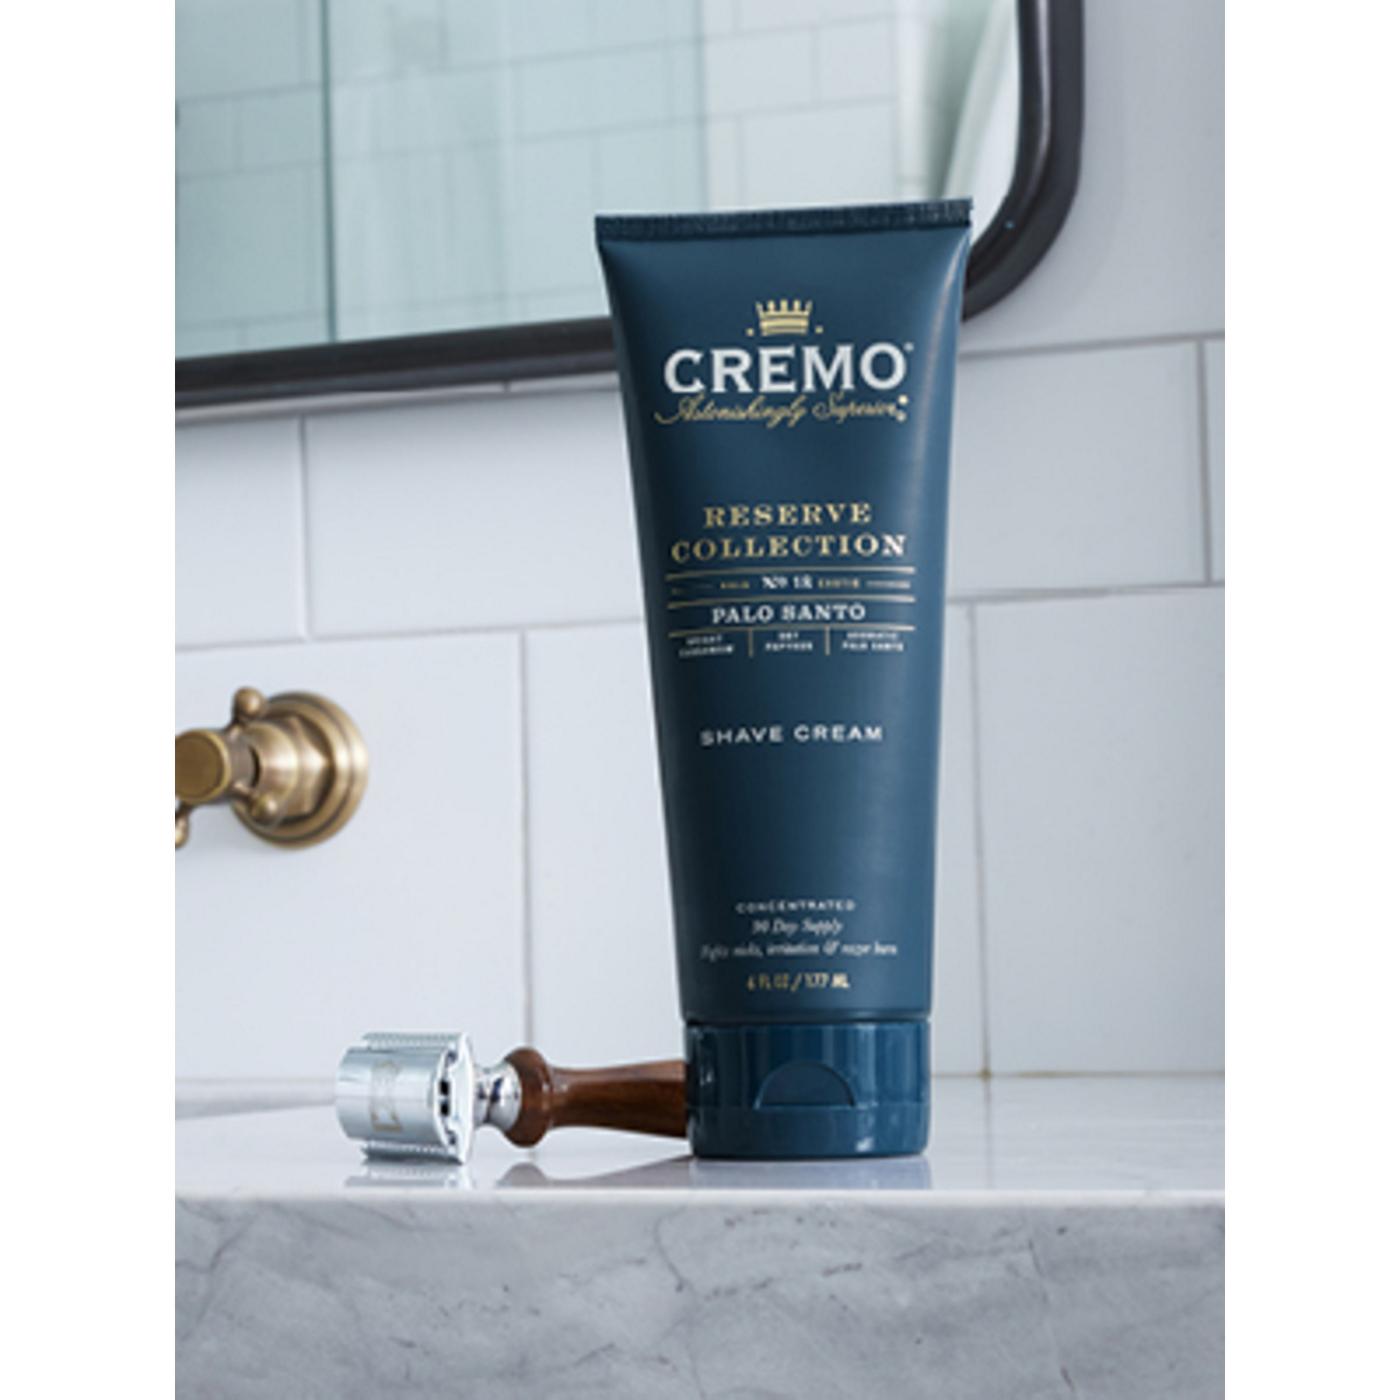 Cremo Shave Cream - Palo Santo; image 3 of 5